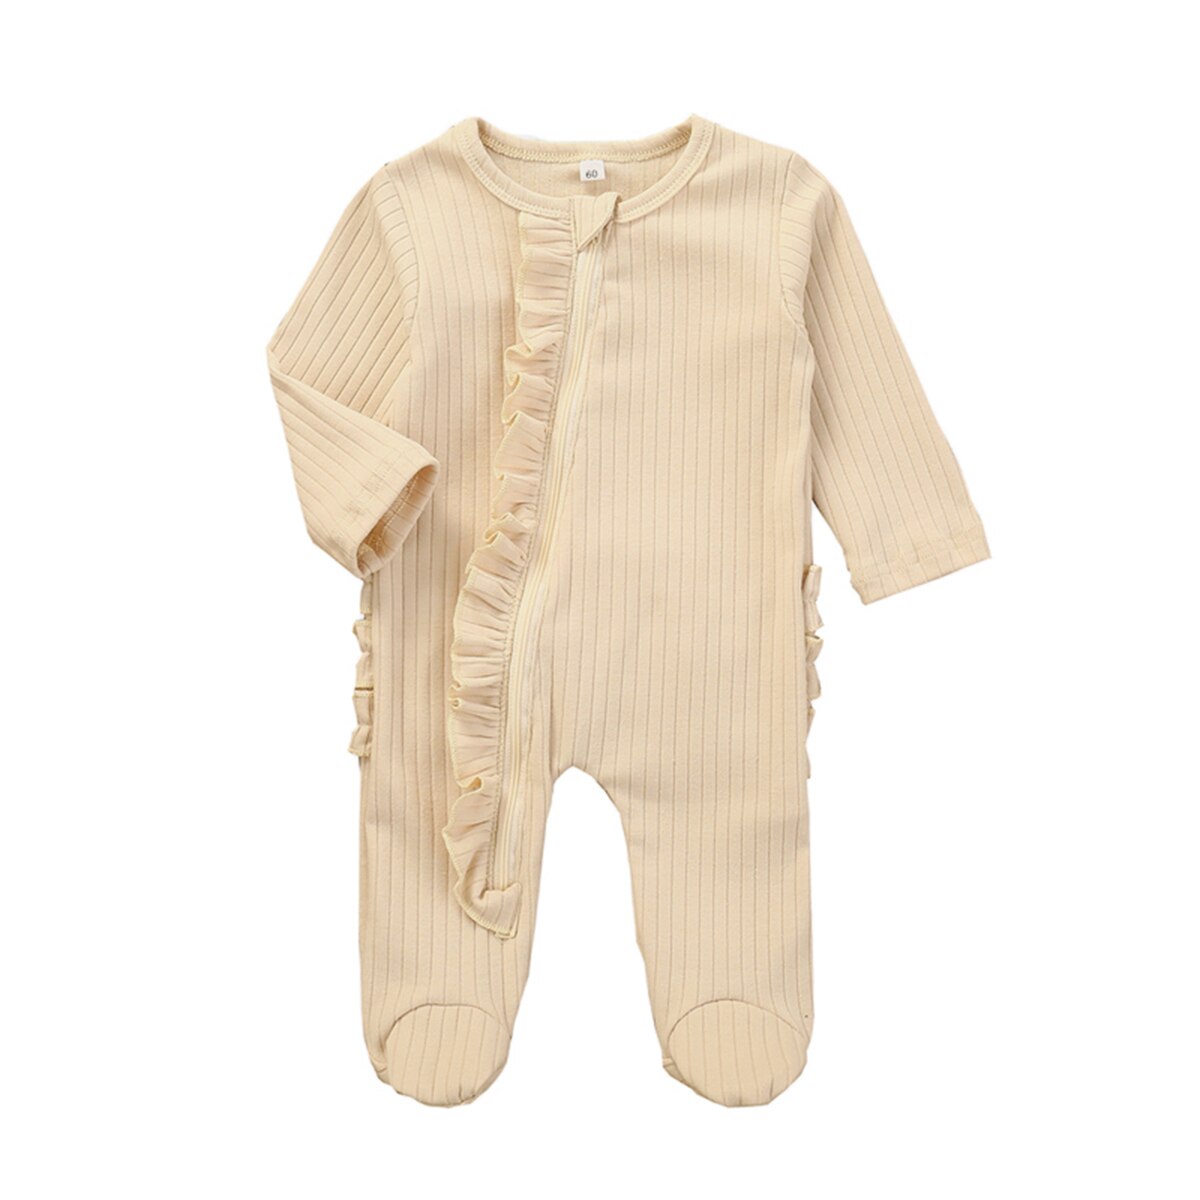 Baby pyjamas spædbarn sødt tøj 0-6 måneder nyfødt dreng pige solid pjusket wrap fod kostume pyjamas blødt varmt outfit: Beige / 3-6 måneder